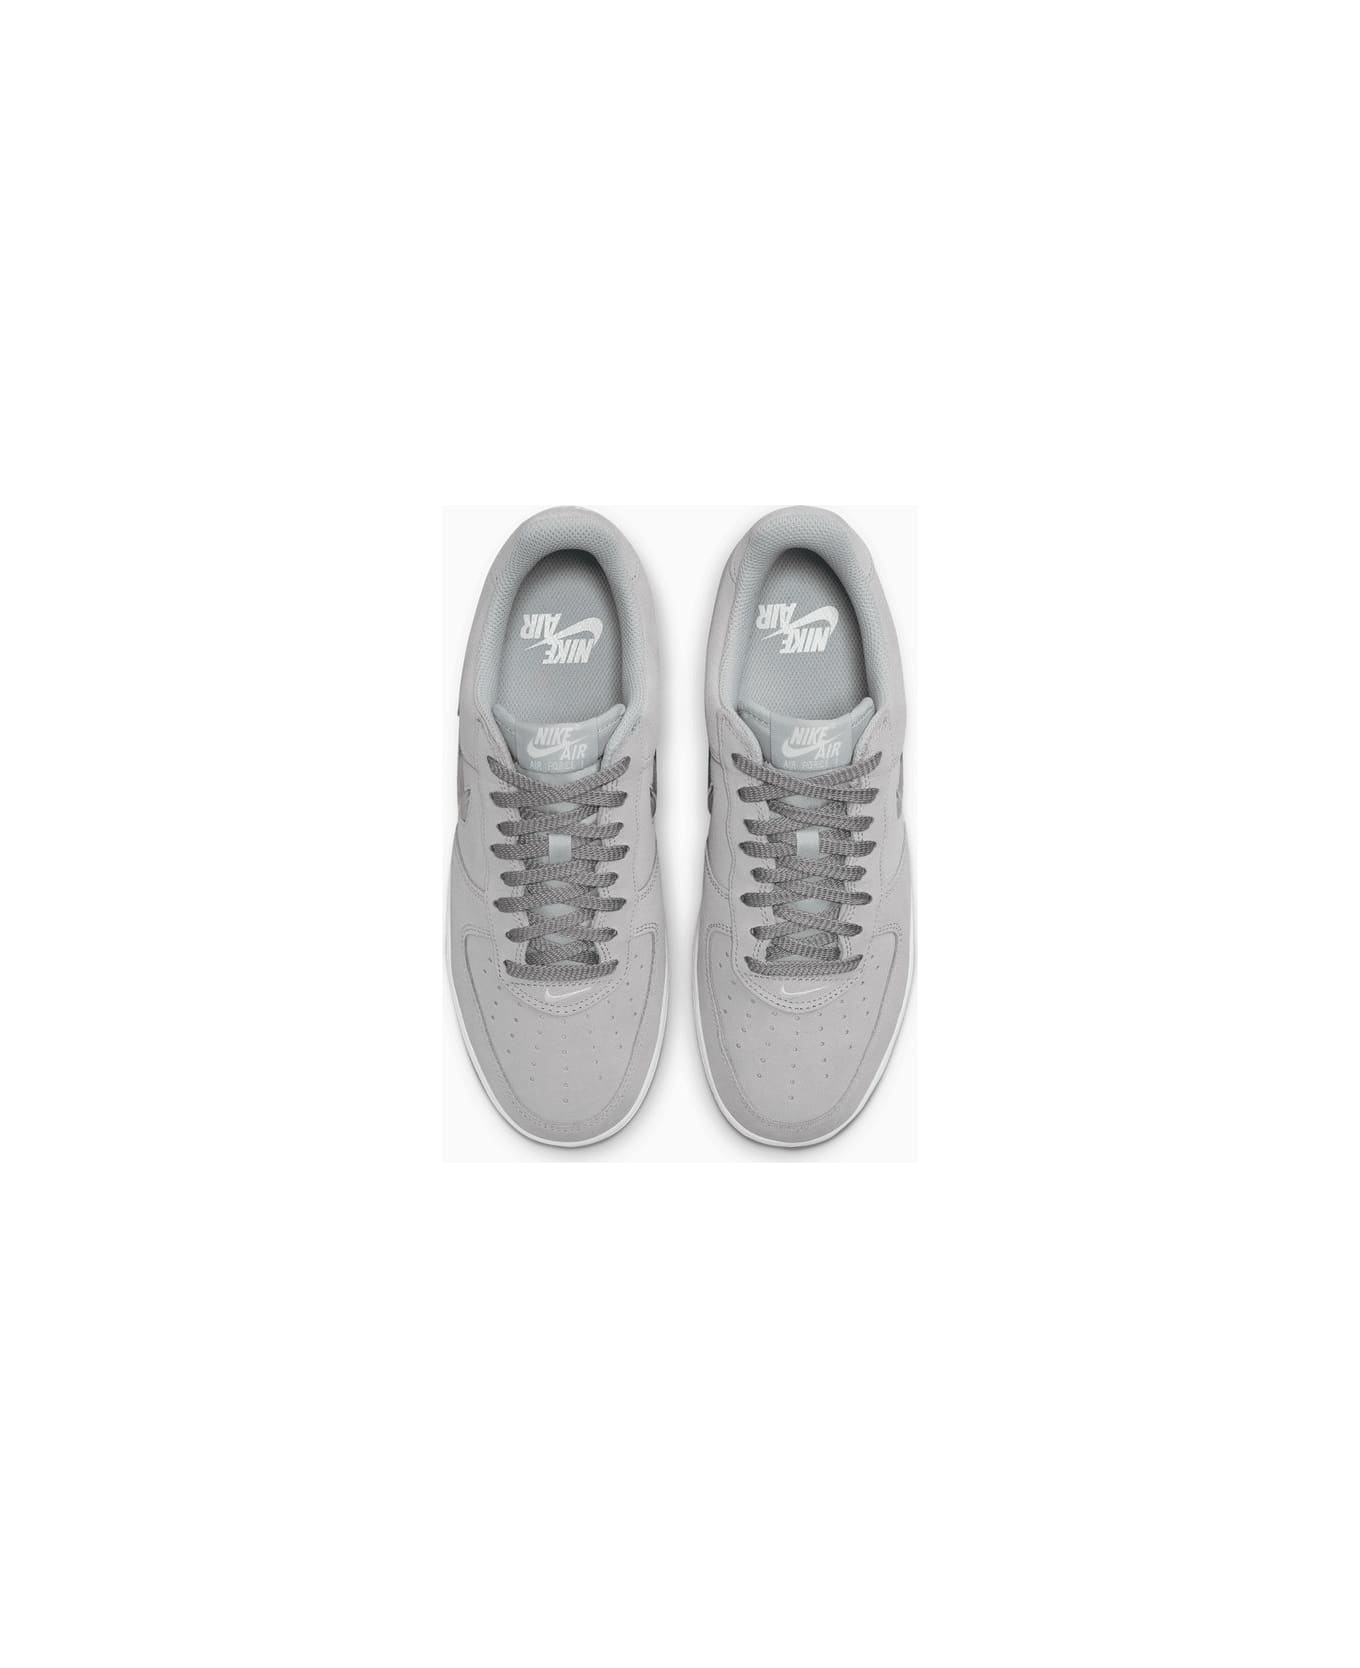 Nike Air Force 1 Low Retro Sneakers Dv0785-003 - Grey